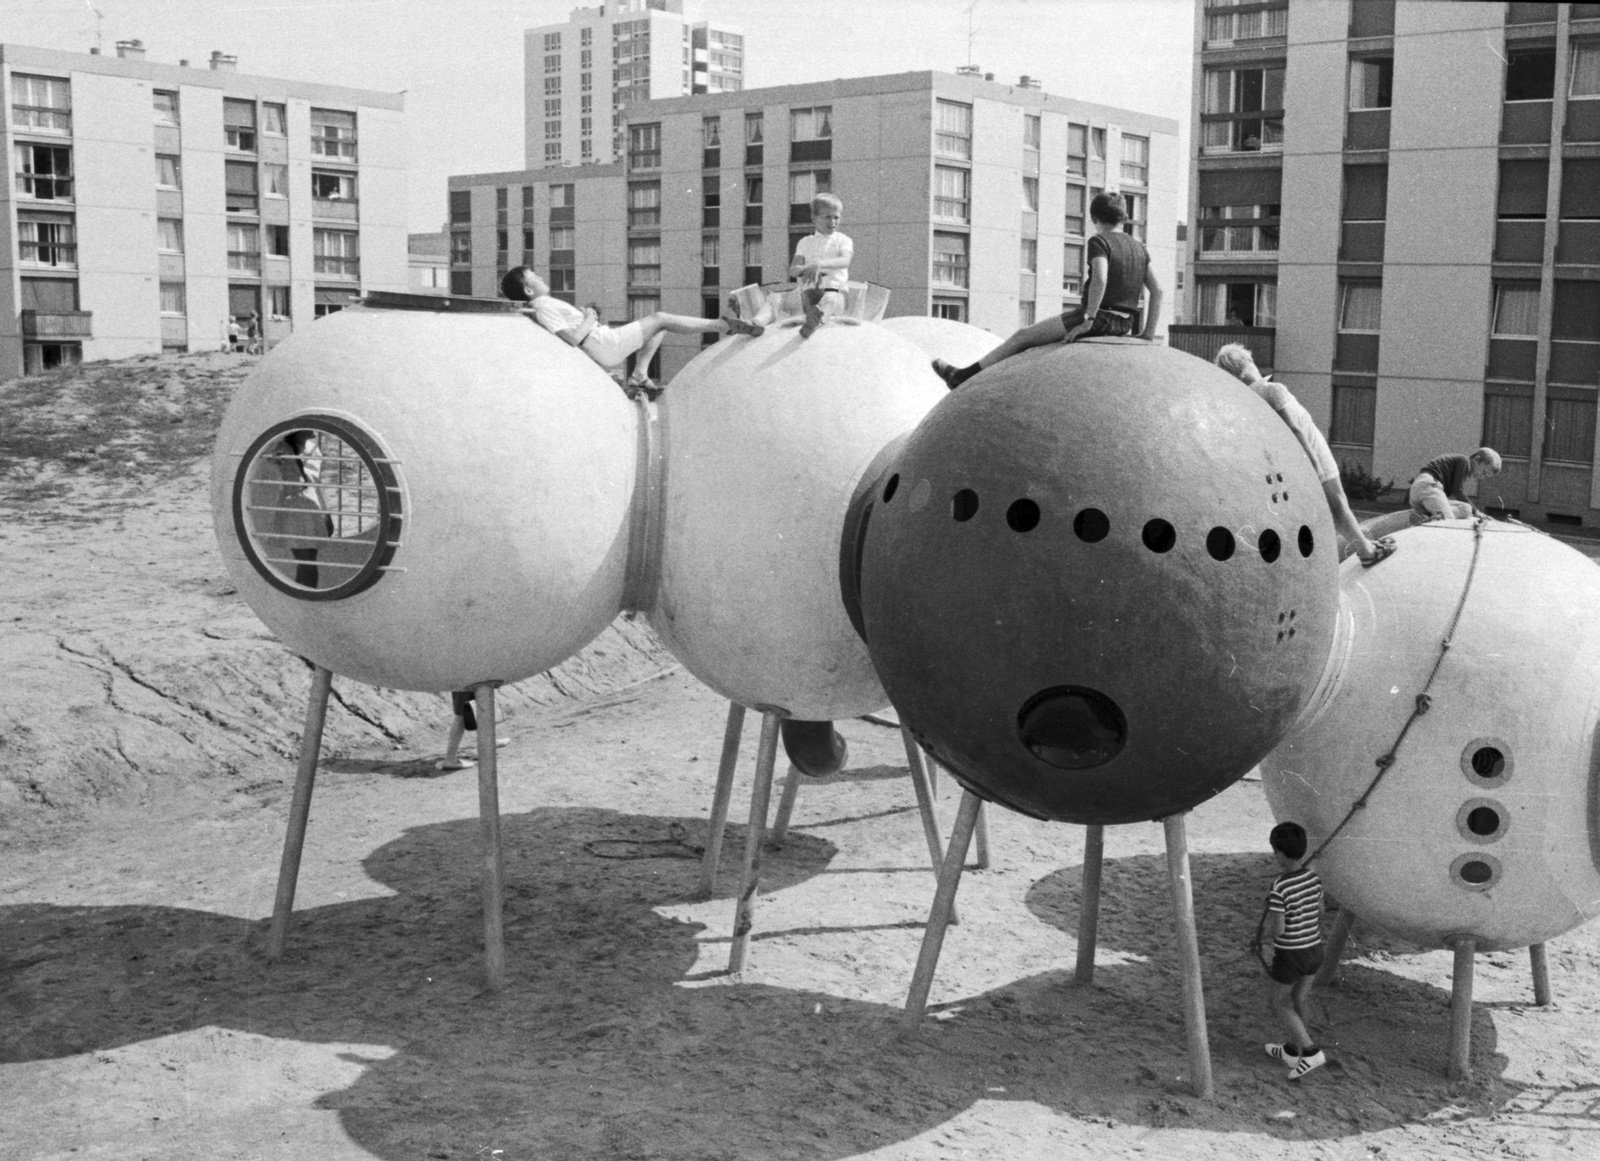 Group Ludic, Spheres on Stilts, H&eacute;rouville-Saint-Clair &ldquo;La Grande Delle&rdquo;, 1968Courtesy Xavier de la Salle